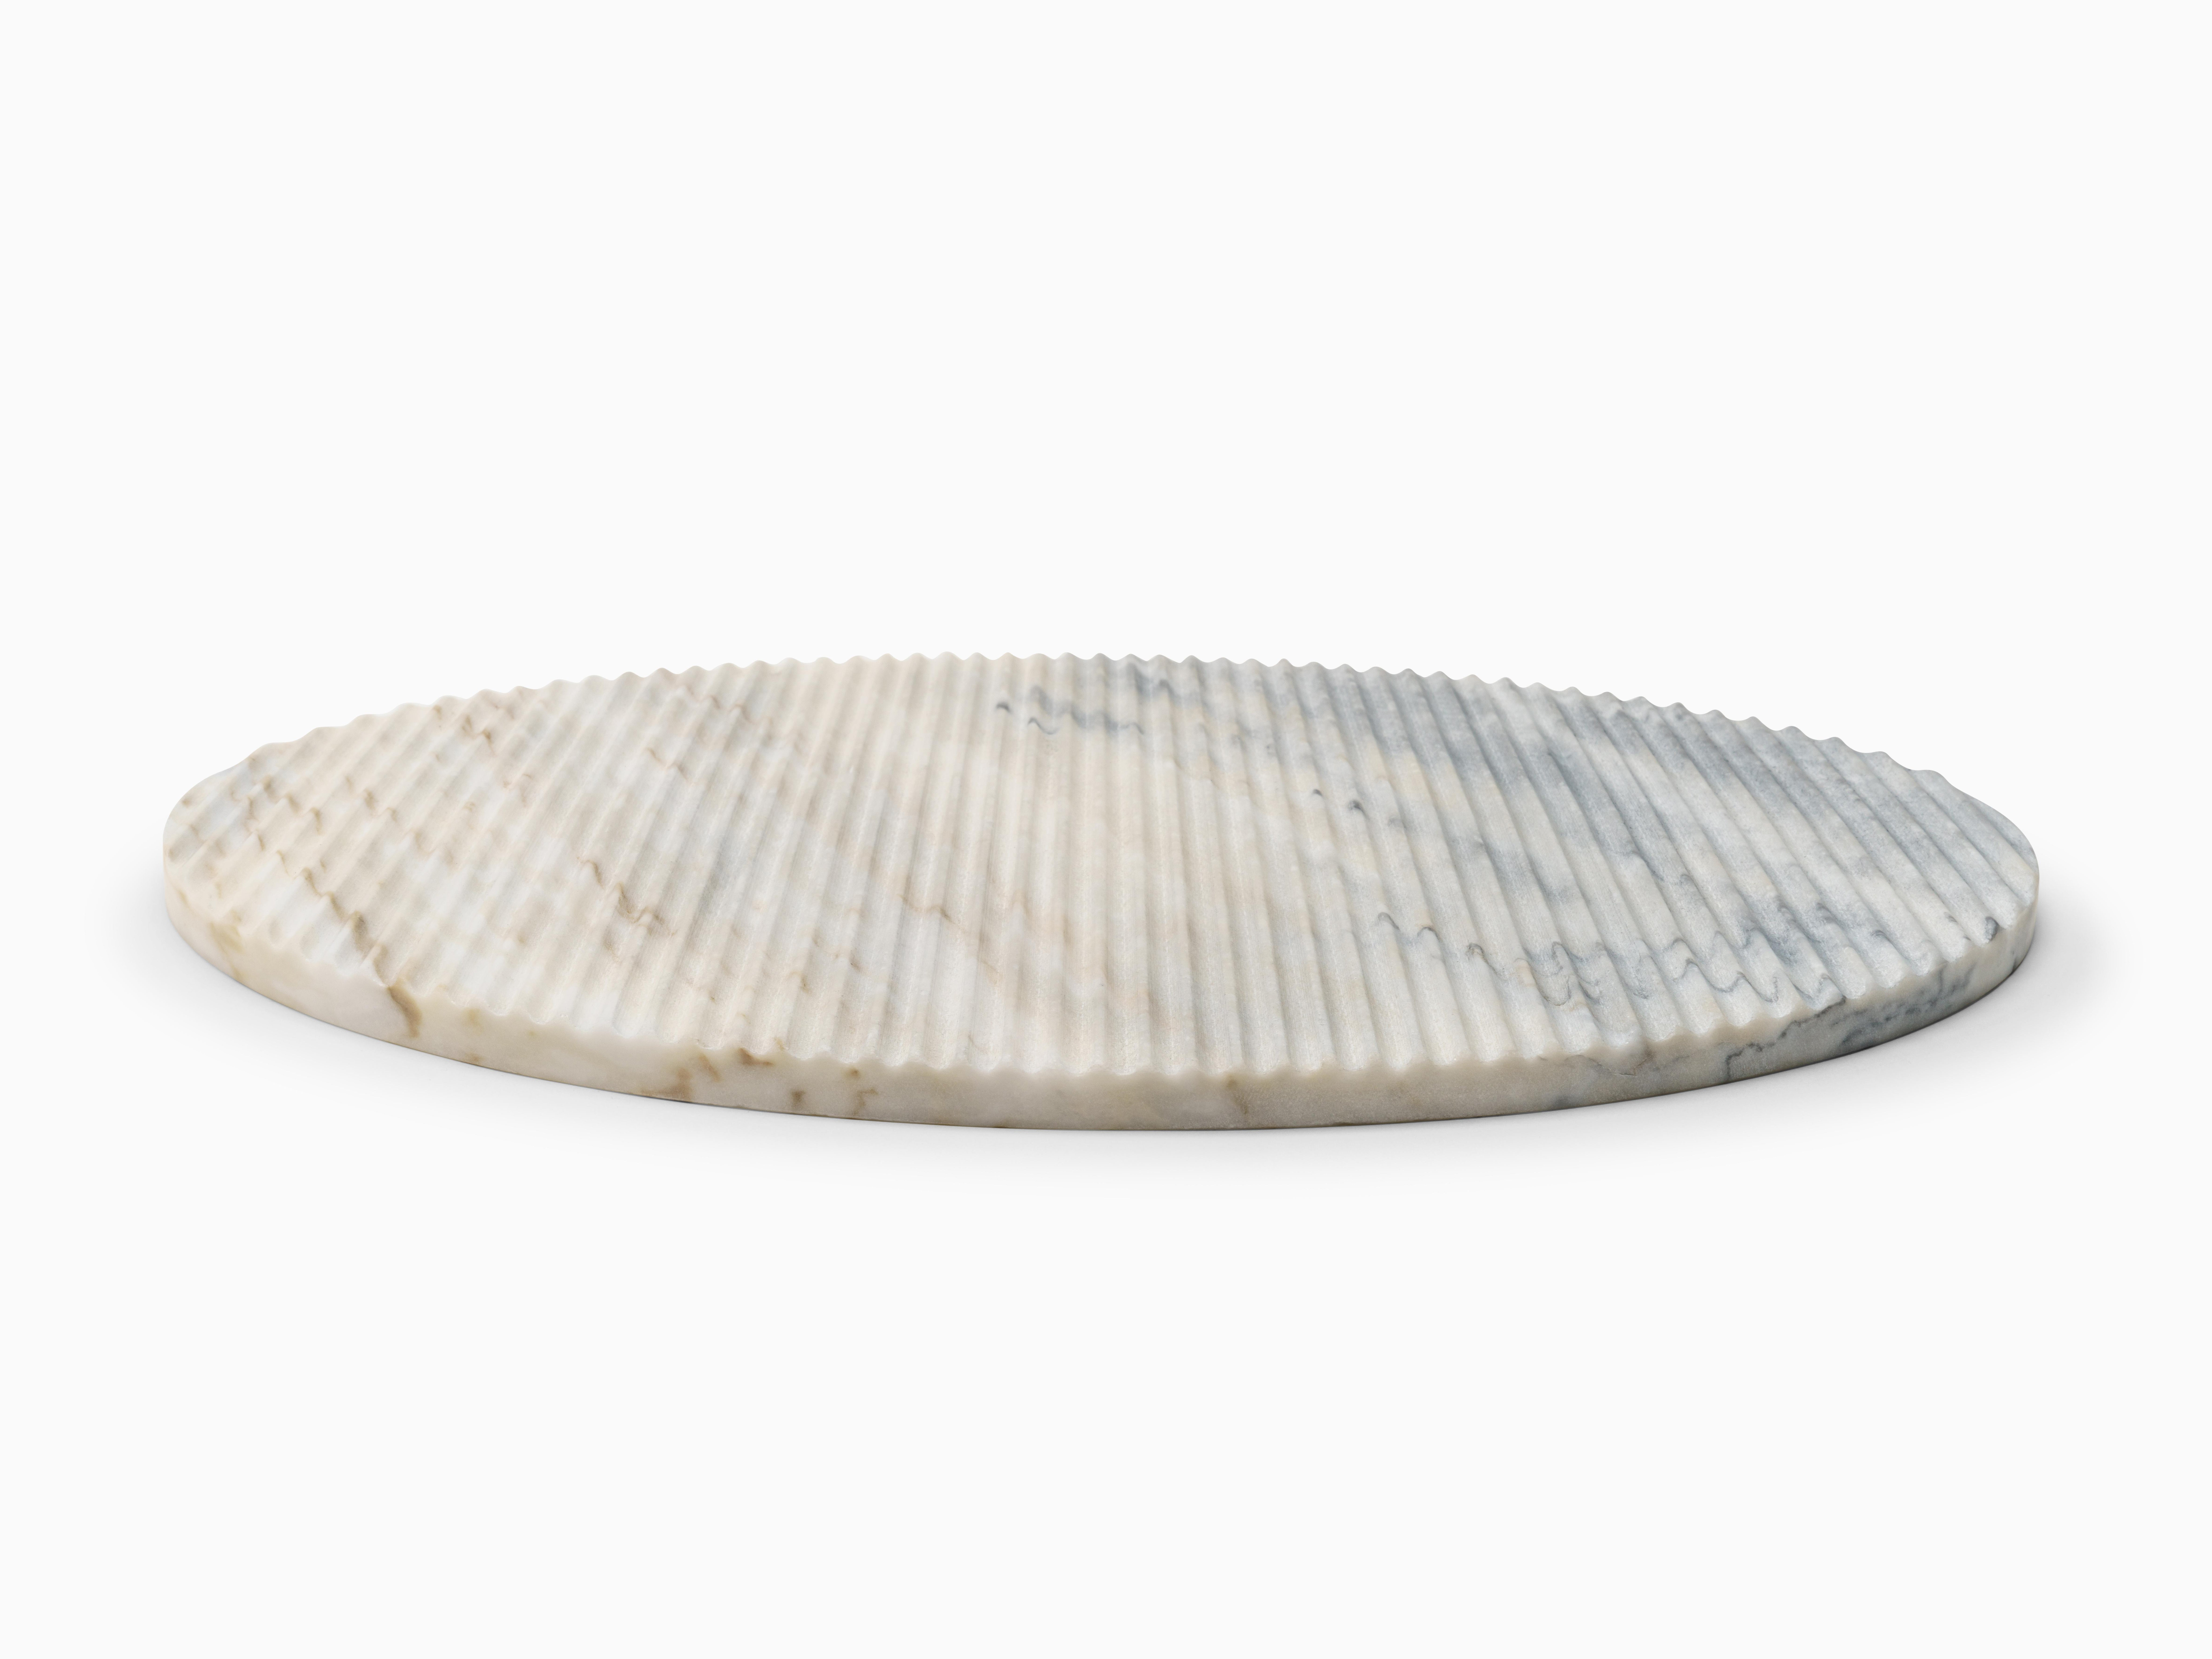 Manuel Aires Mateus entwirft vier elegante Steinteller, die von einer einfachen, runden Form inspiriert sind. Der schöne Estremoz-Marmor ist mit einem klassischen Muster gerillt. Sein einzigartiges Aussehen wird durch vertikale Rillen erreicht, die